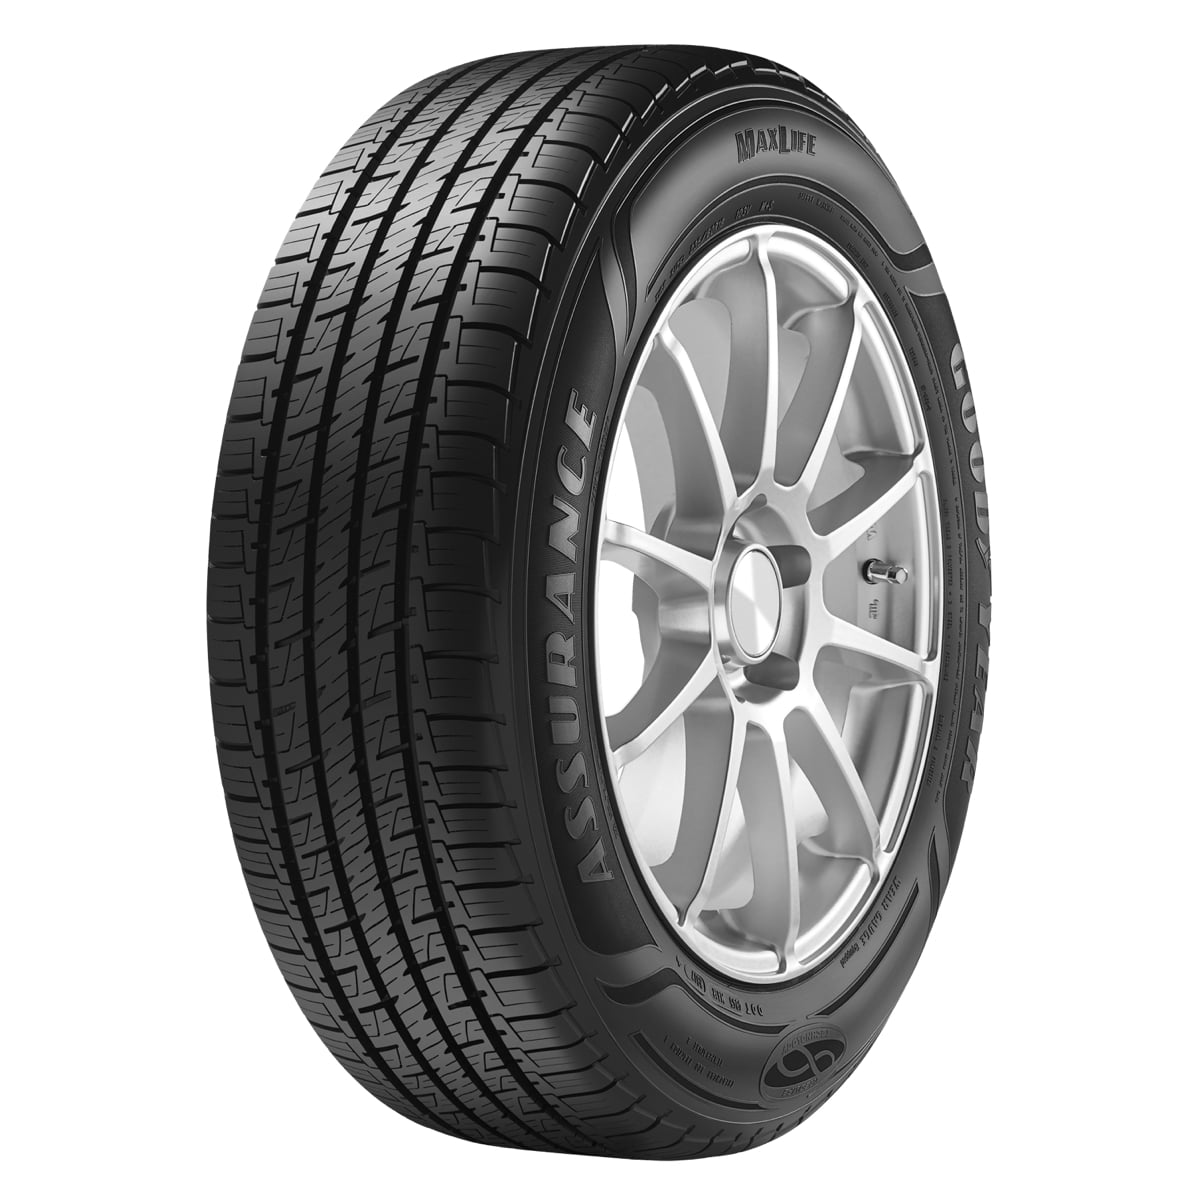 Goodyear Assurance Maxlife Tire Rebate